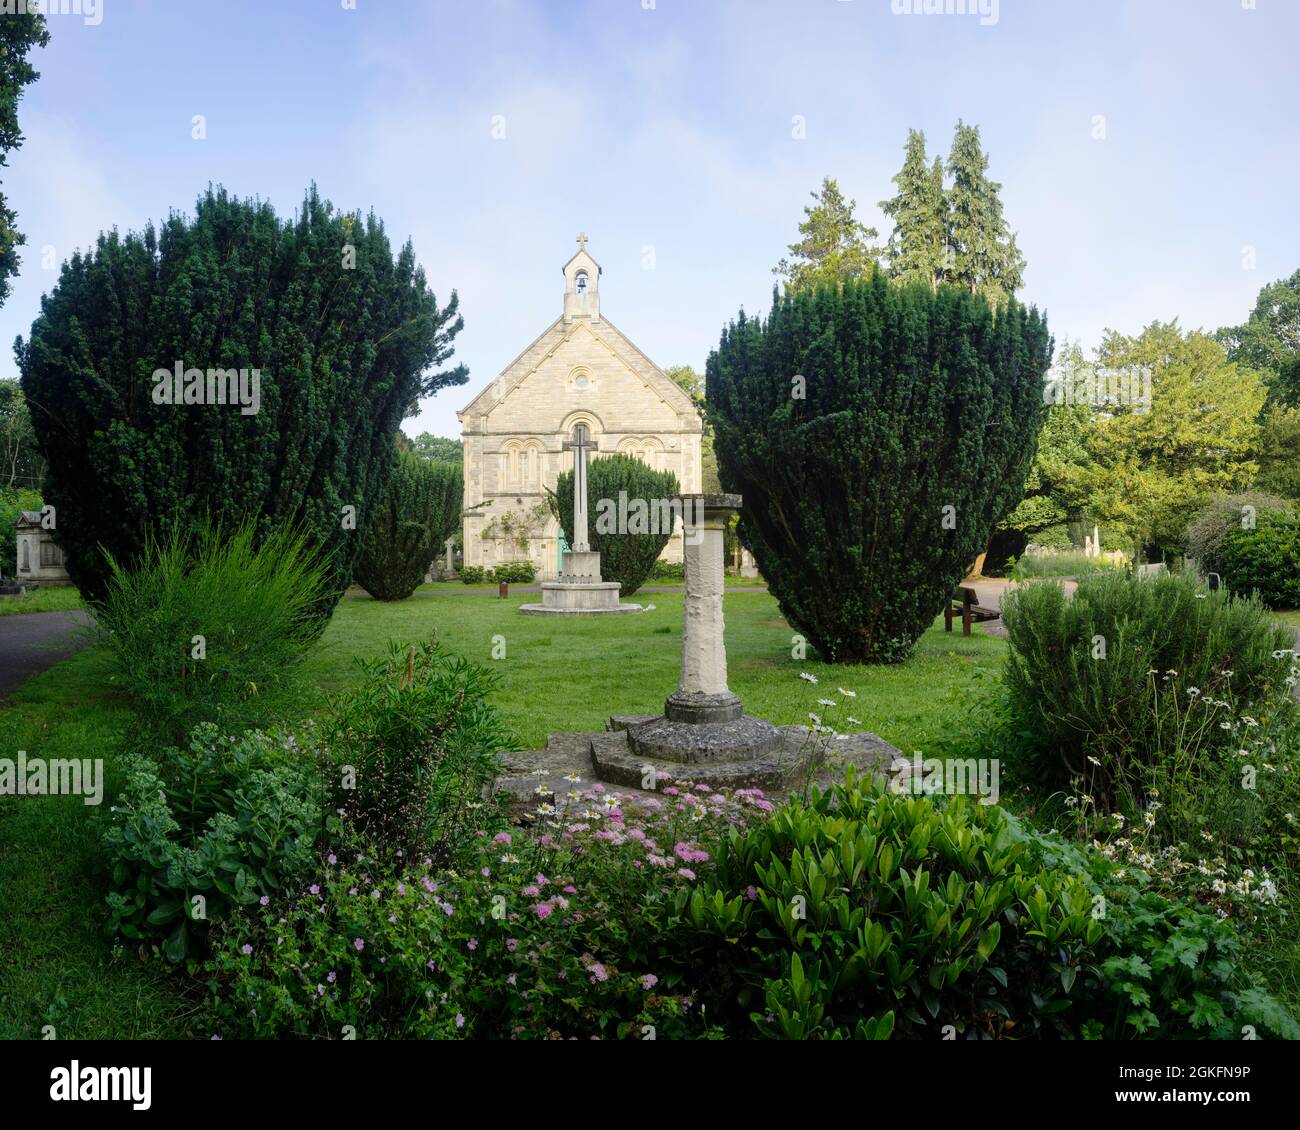 La chapelle anglicane de Southampton vieux cimetière, Southampton, Hampshire, Angleterre commun. Banque D'Images